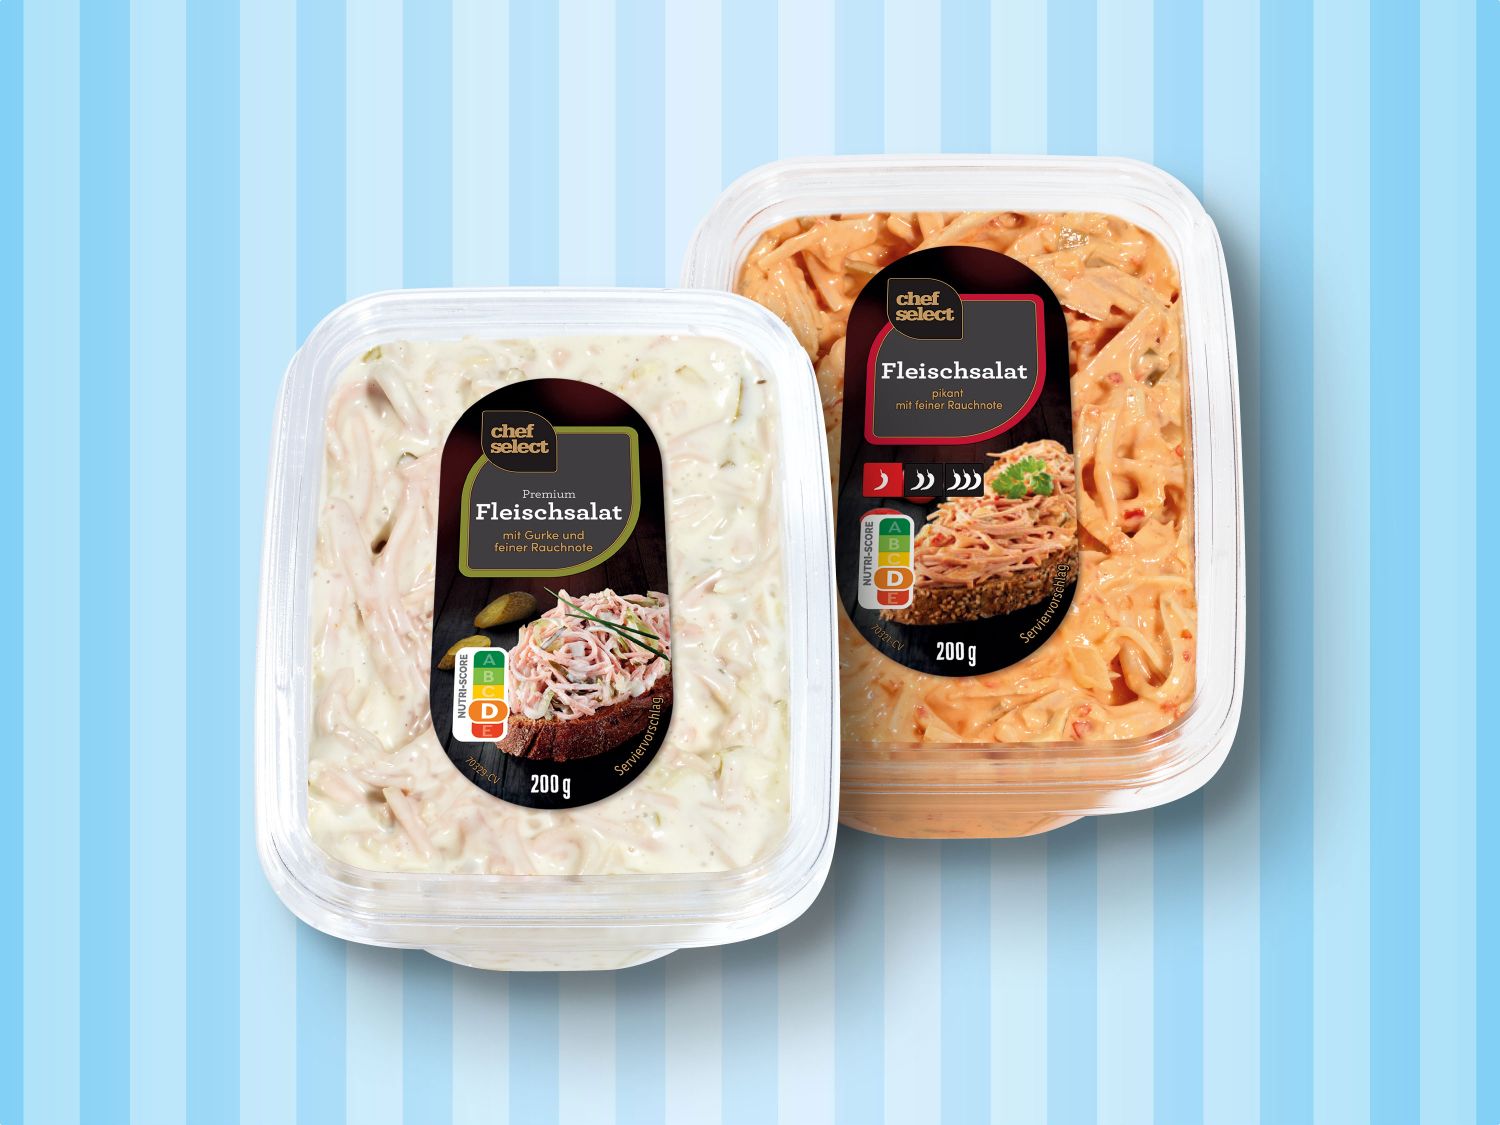 Chef Select Premium - Fleischsalat Lidl Deutschland